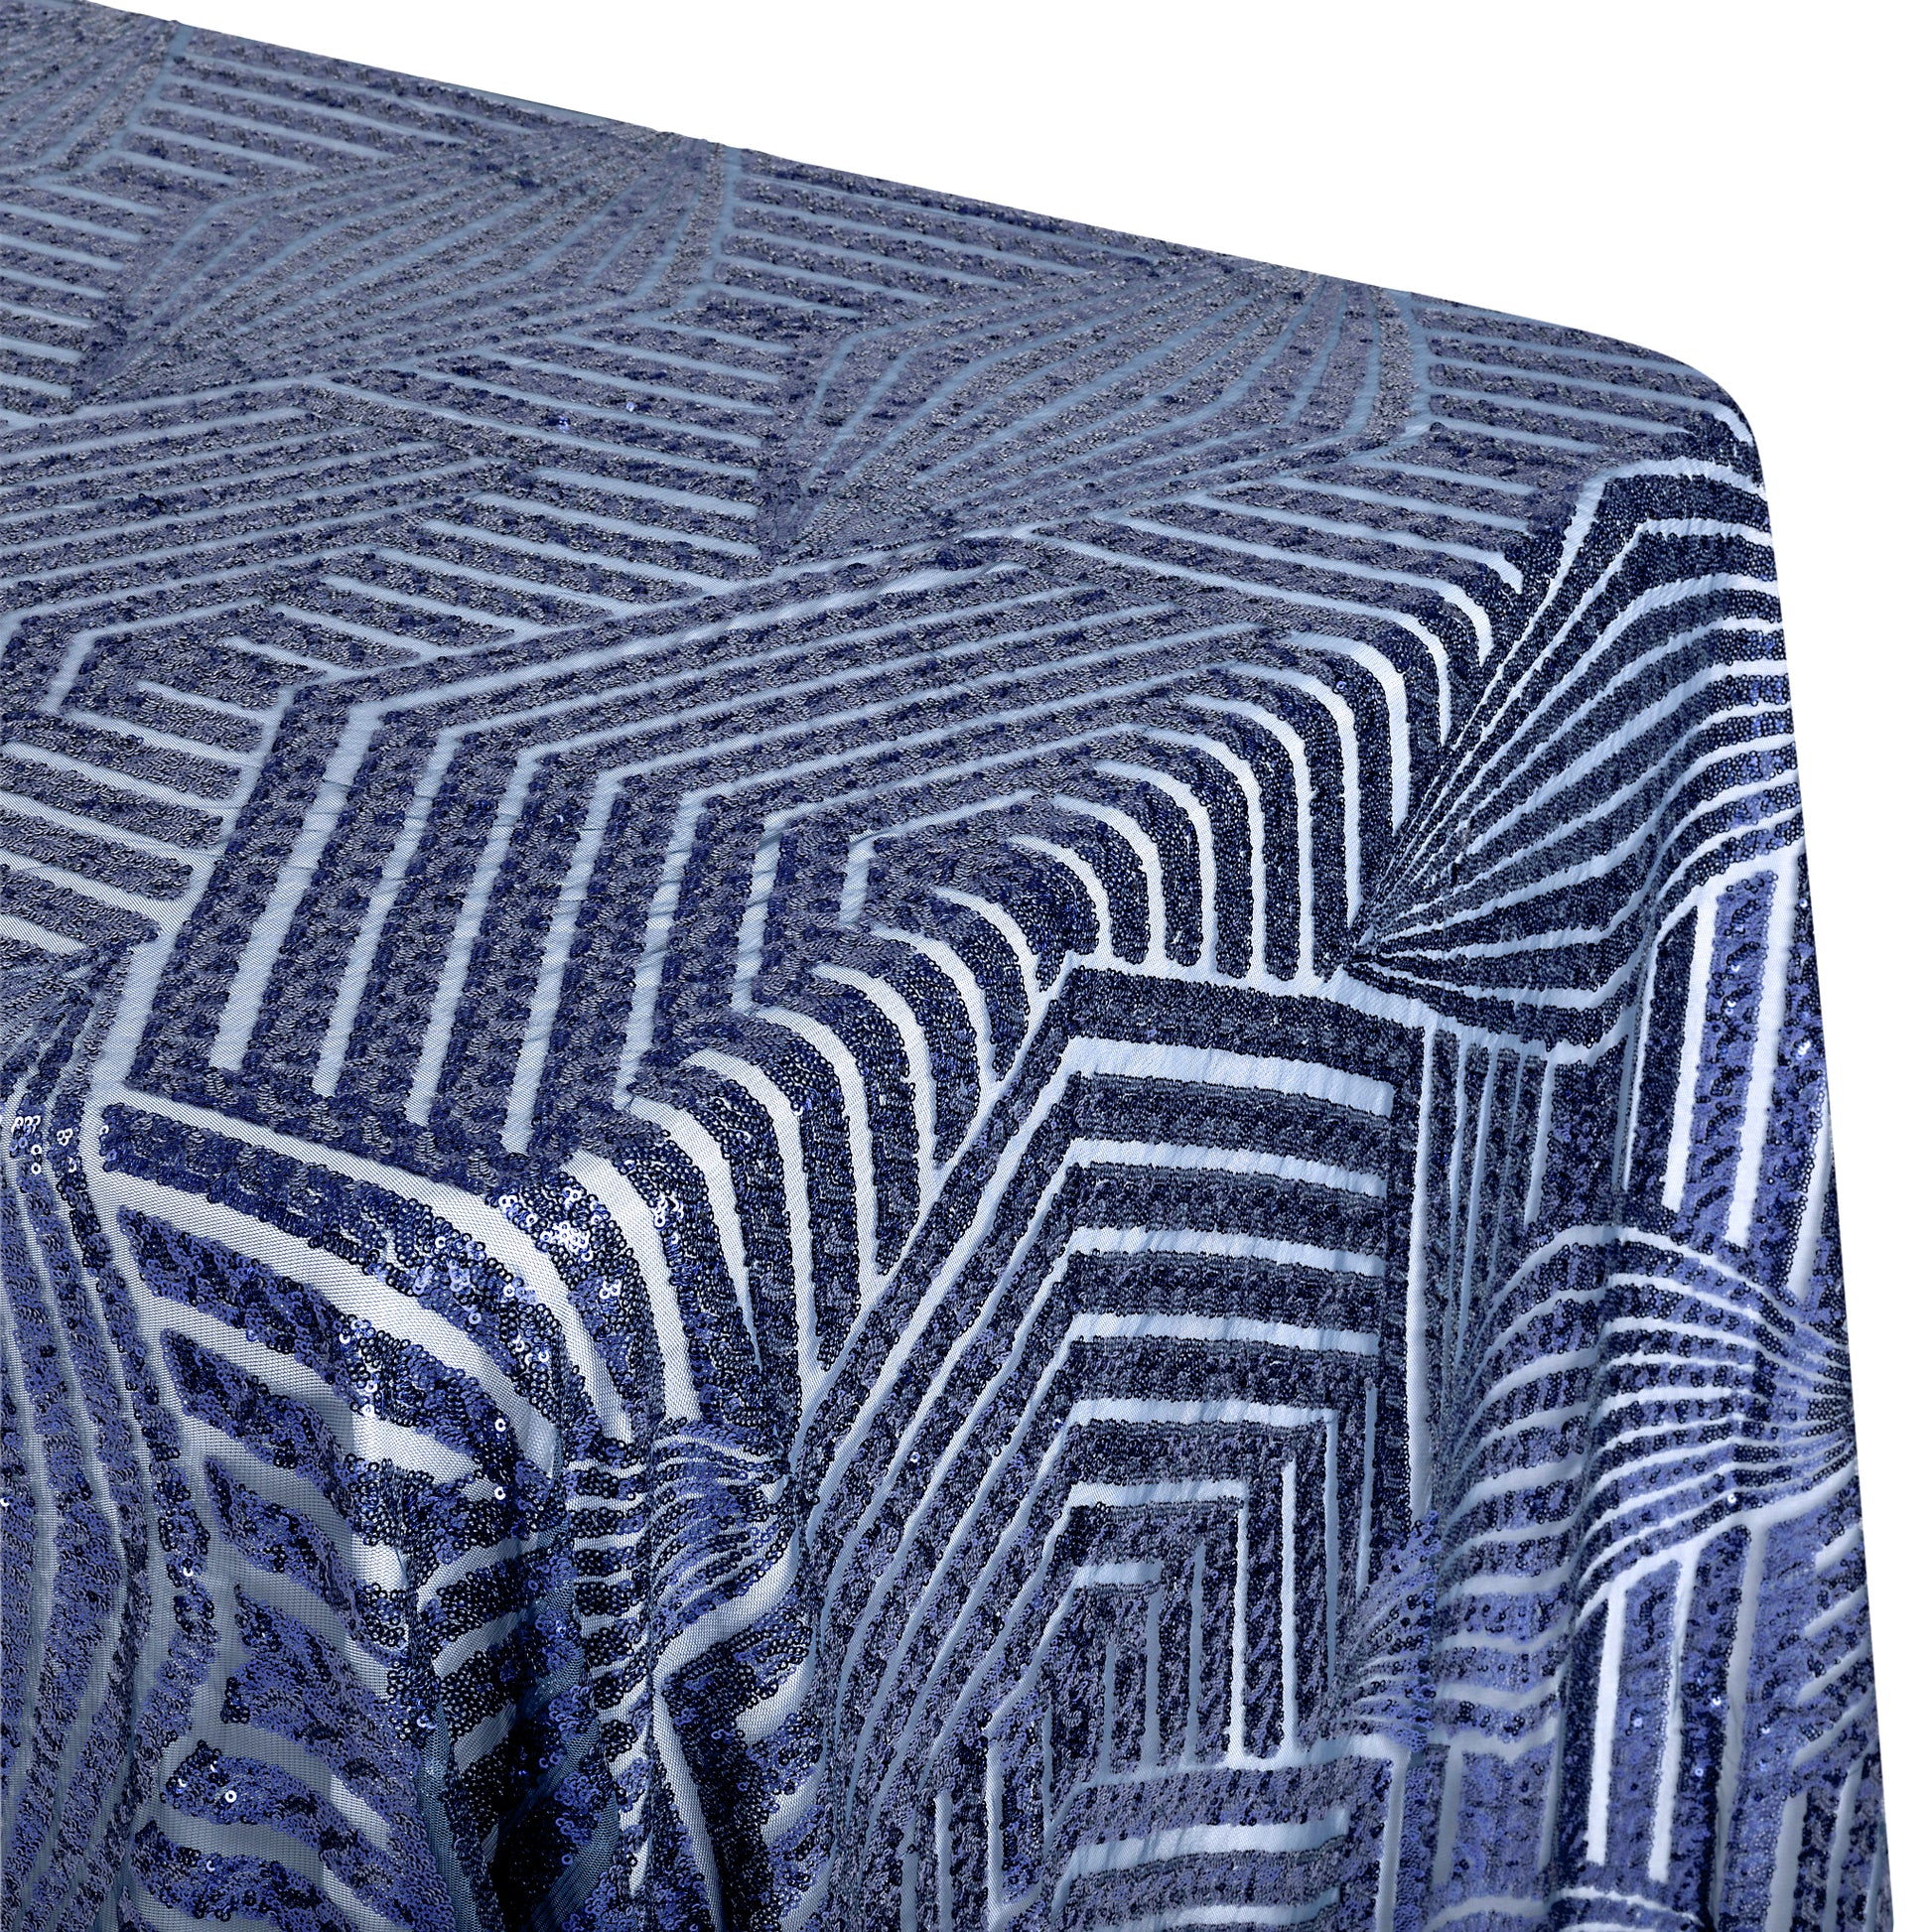 Geometric Glitz Art Deco Sequin Tablecloth 90"x132" Rectangular - Navy Blue - CV Linens